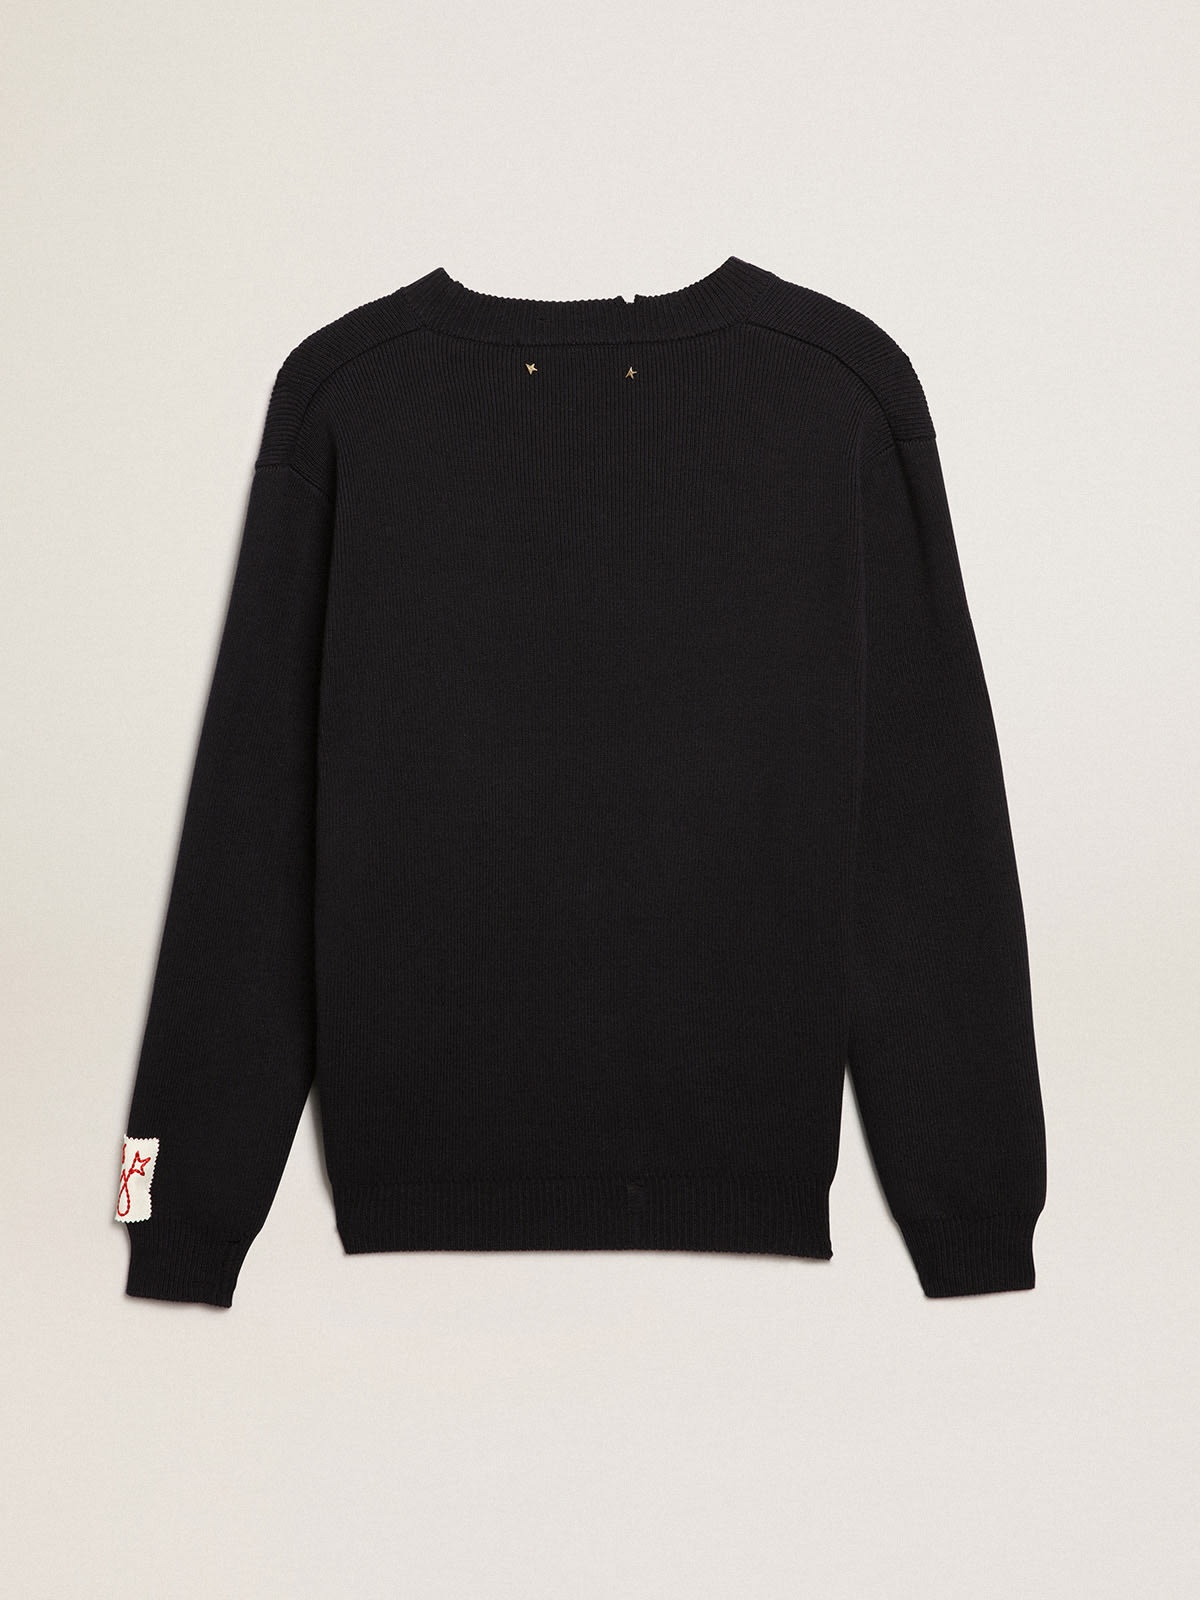 Men’s round-neck sweater in dark blue cotton - 5